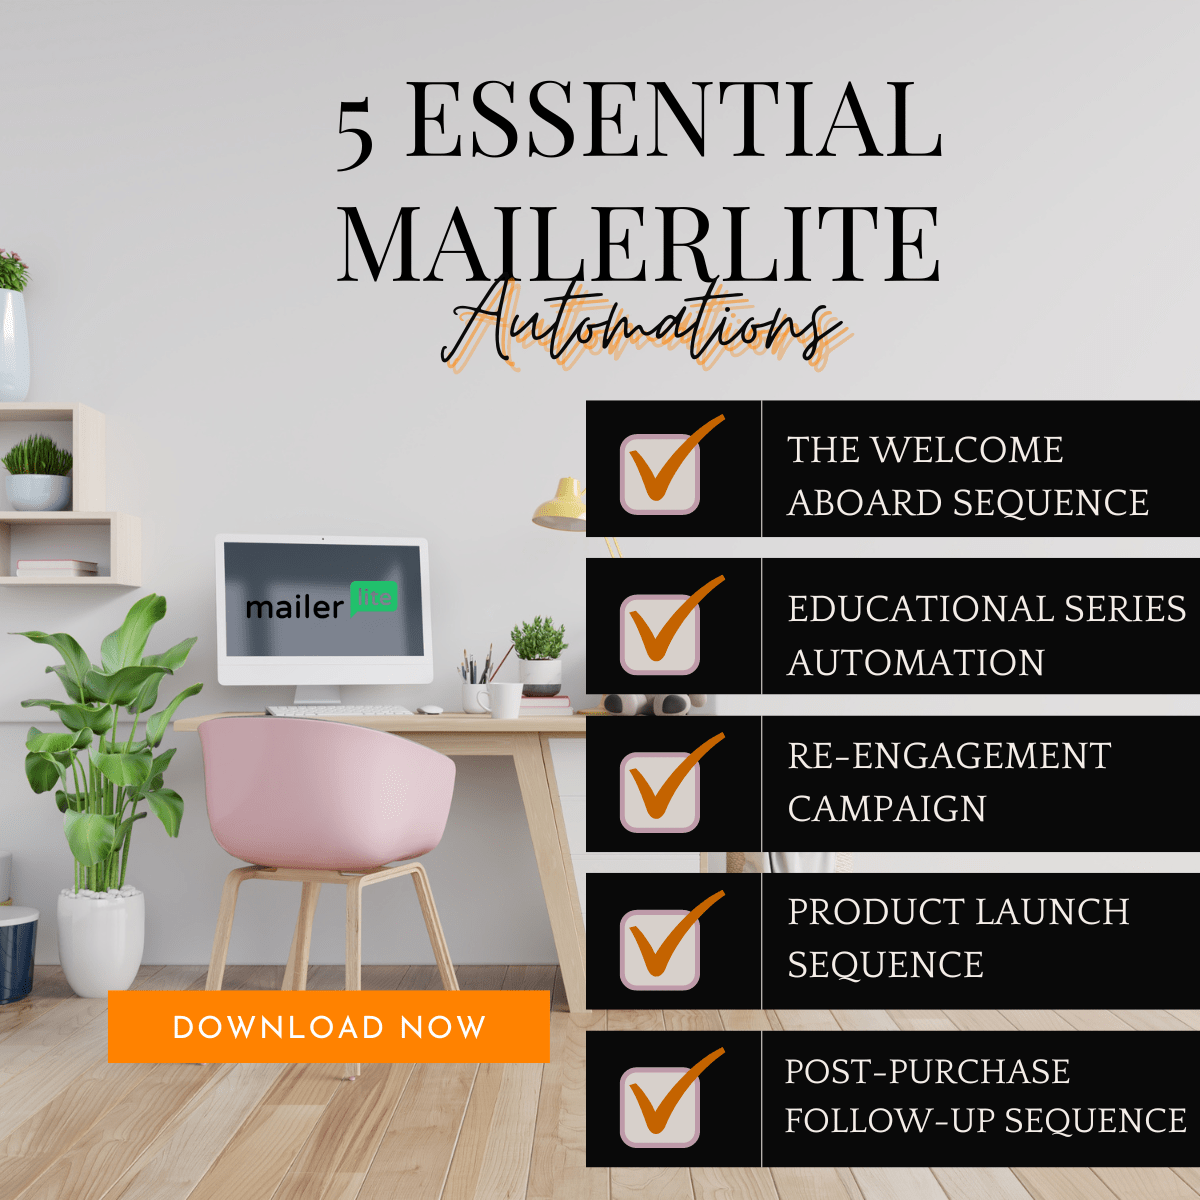 5 Essential Mailerlite Automation